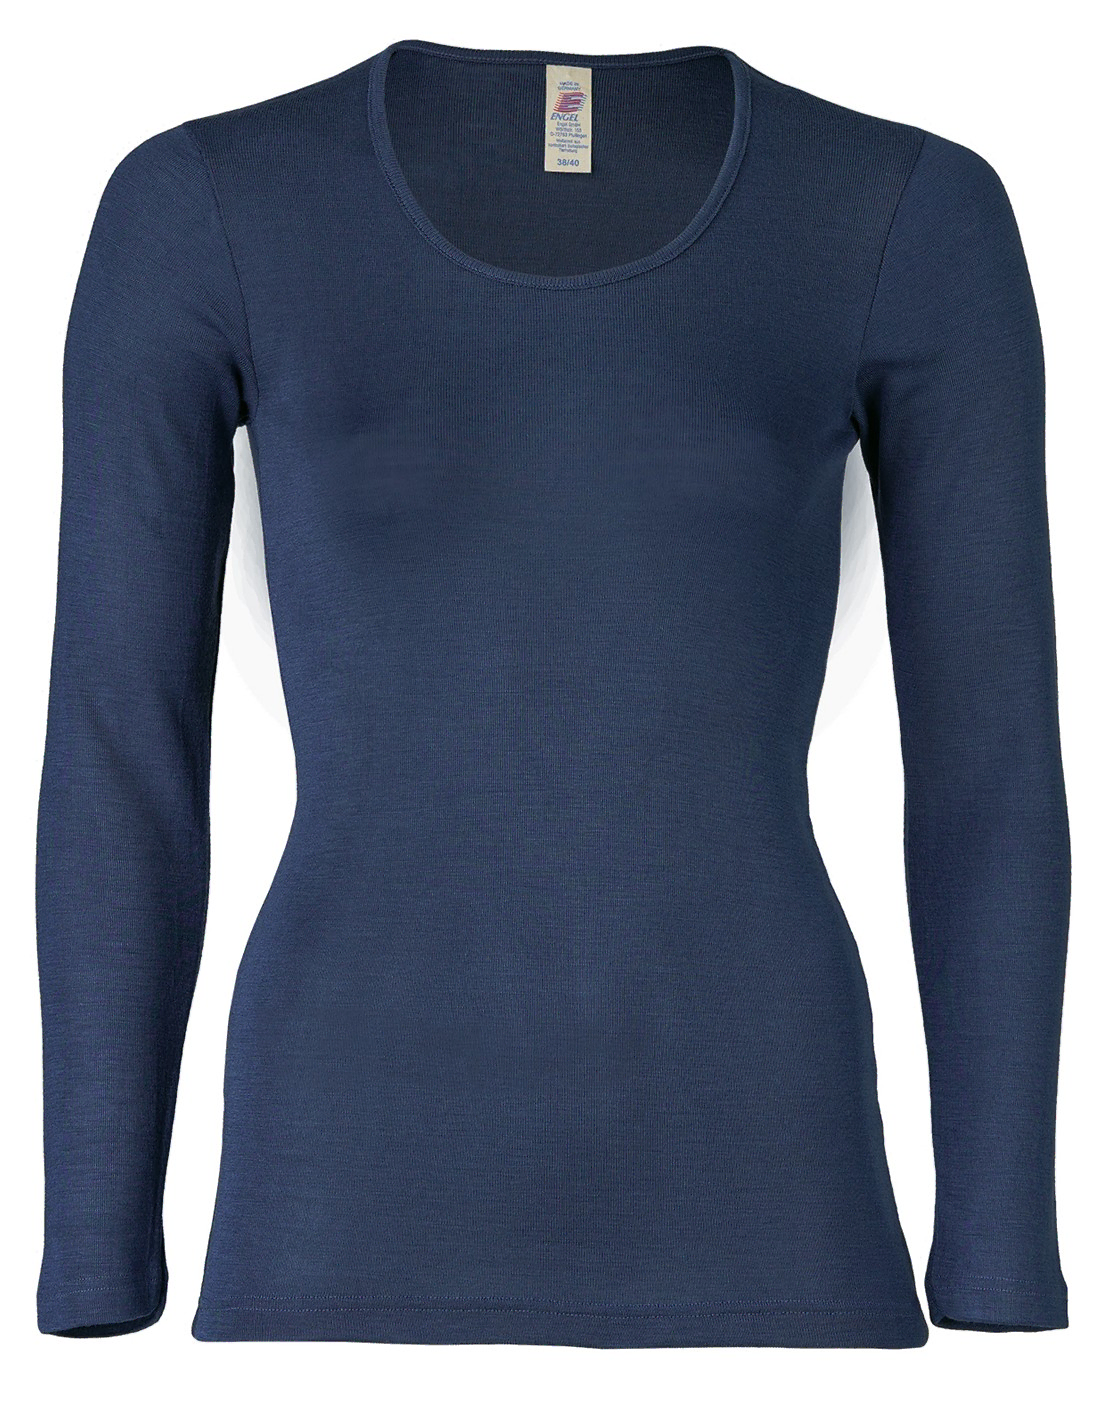 Image of Dames Shirt Lange Mouw Zijde Wol Engel Natur, Kleur Navy blauw, Maat 34/36 - Small